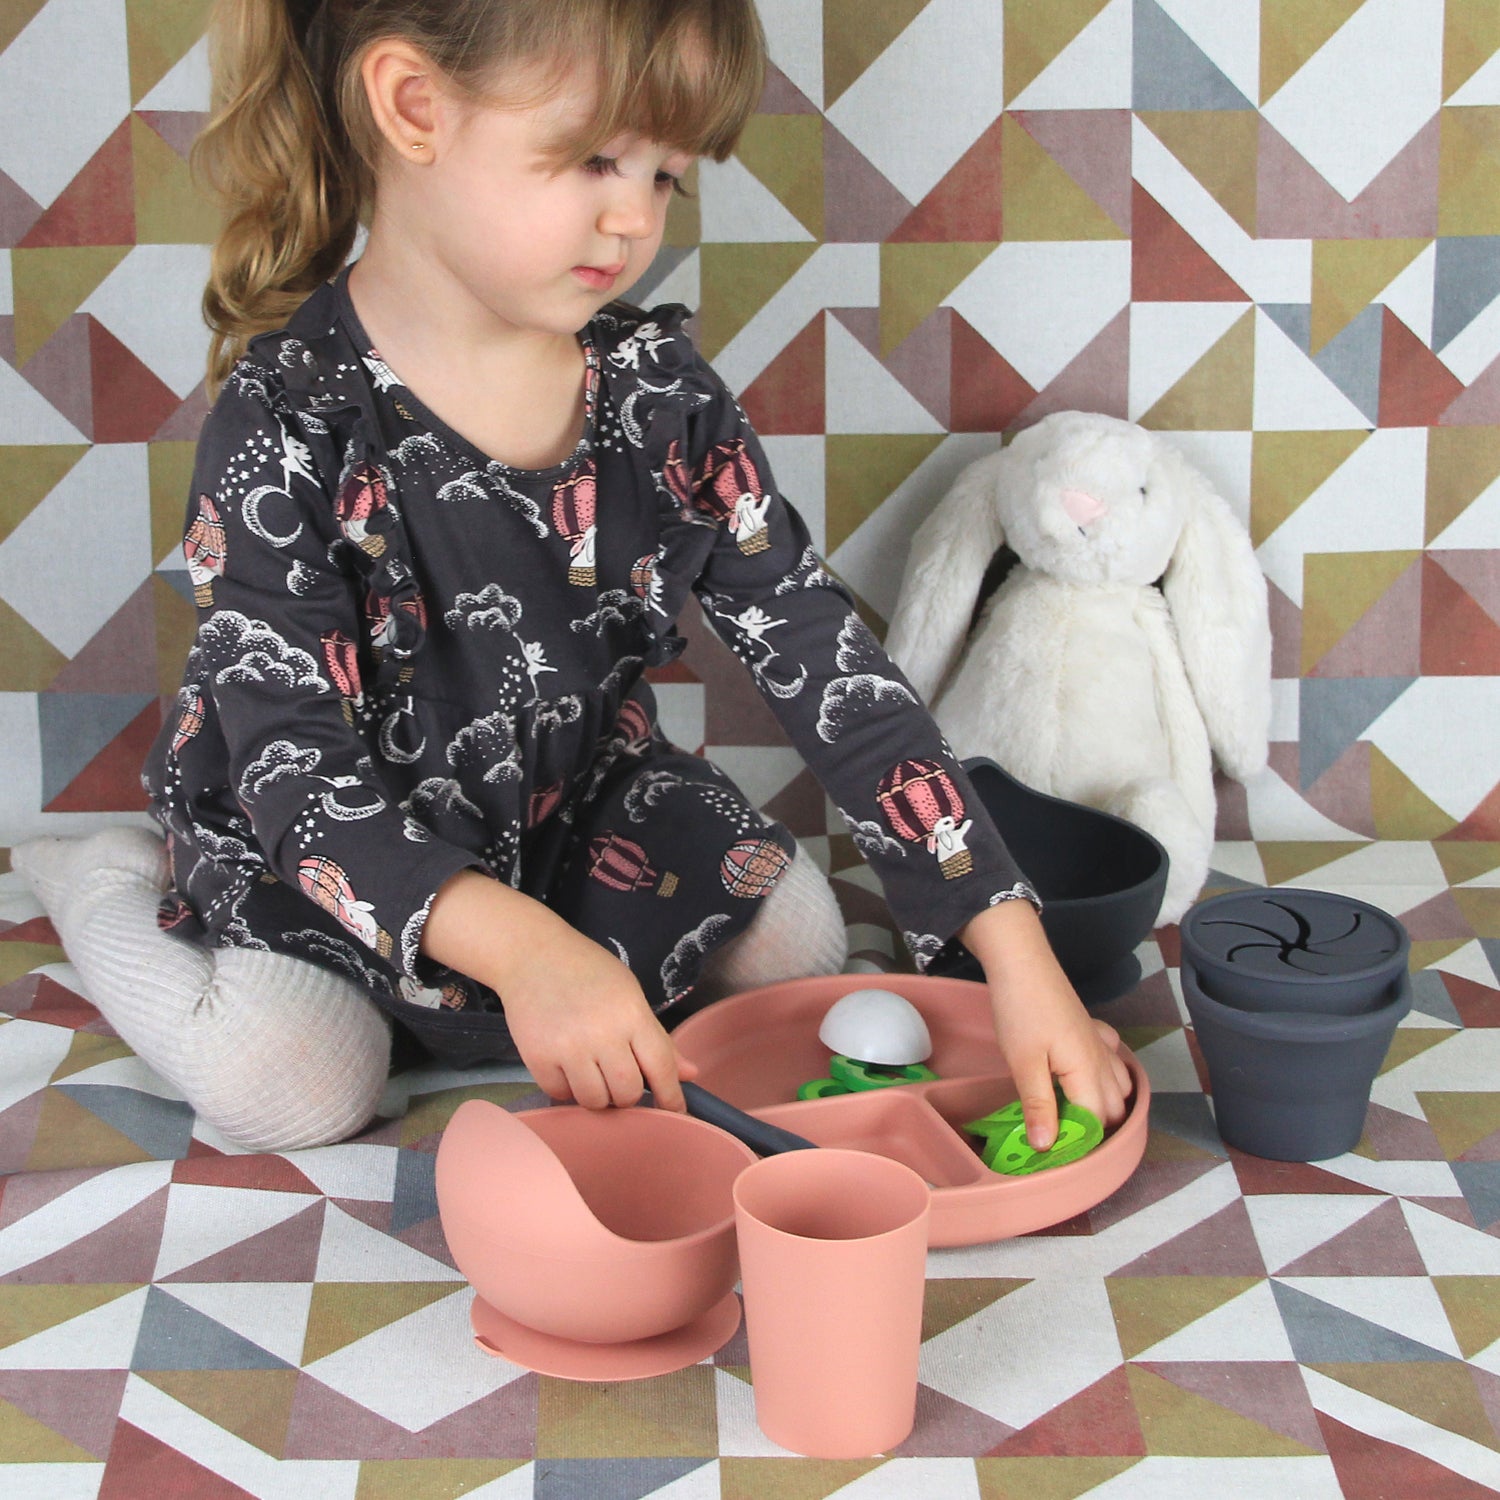 Set Completo de Alimentación para Bebé-Toddler - 6 piezas (Plato, Bowl, Cuchara, Tenedor, Babero y Vaso para Snacks) - Arena  y Verde